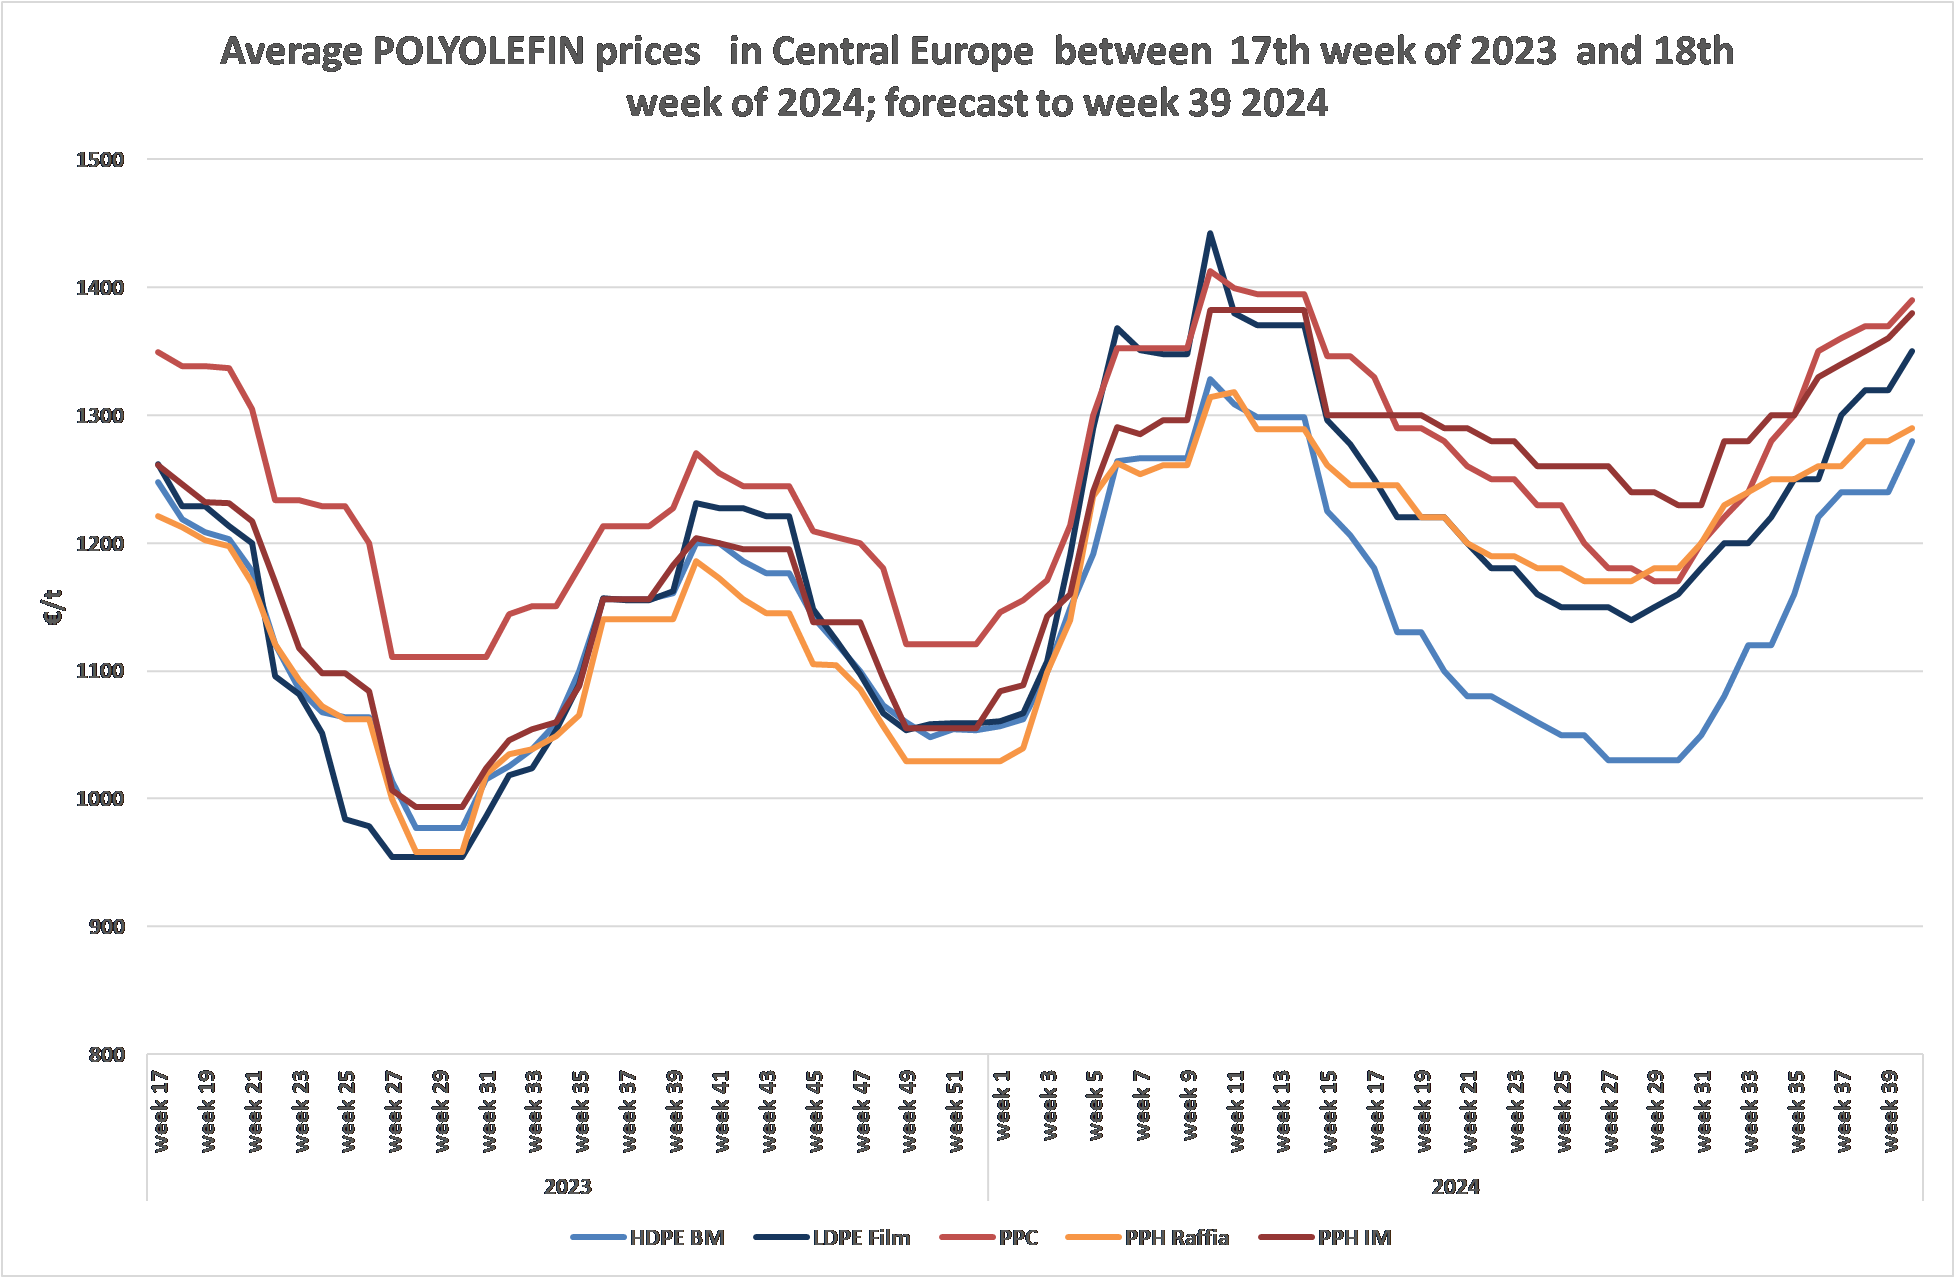 Priemerné ceny POLYOLEFINU v strednej Európe od 17. týda 2023 do 18. týda 2024. Prognóza do 39. týda 2024